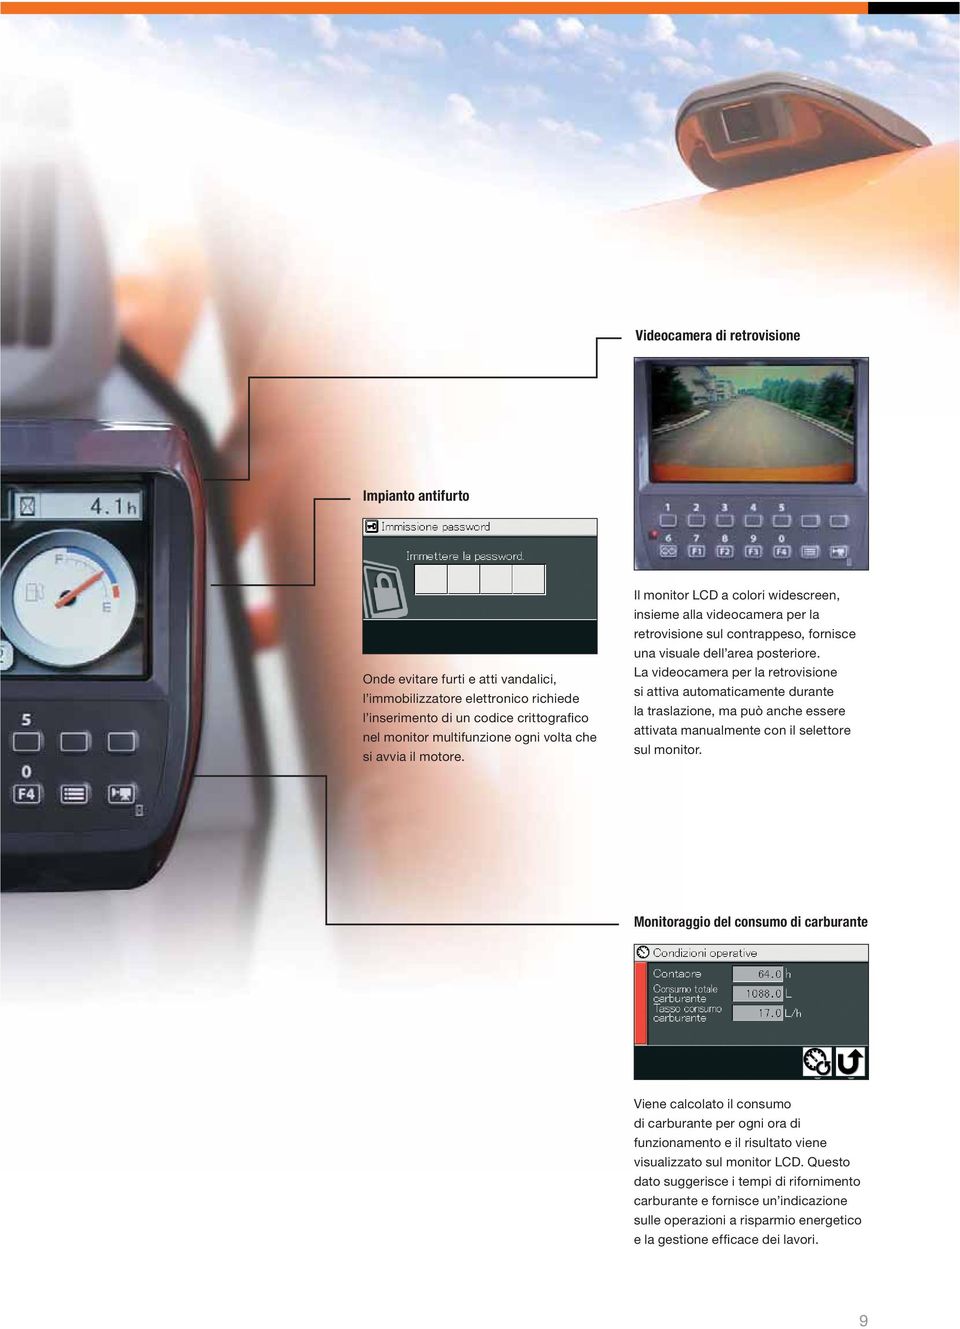 La videocamera per la retrovisione si attiva automaticamente durante la traslazione, ma può anche essere attivata manualmente con il selettore sul monitor.